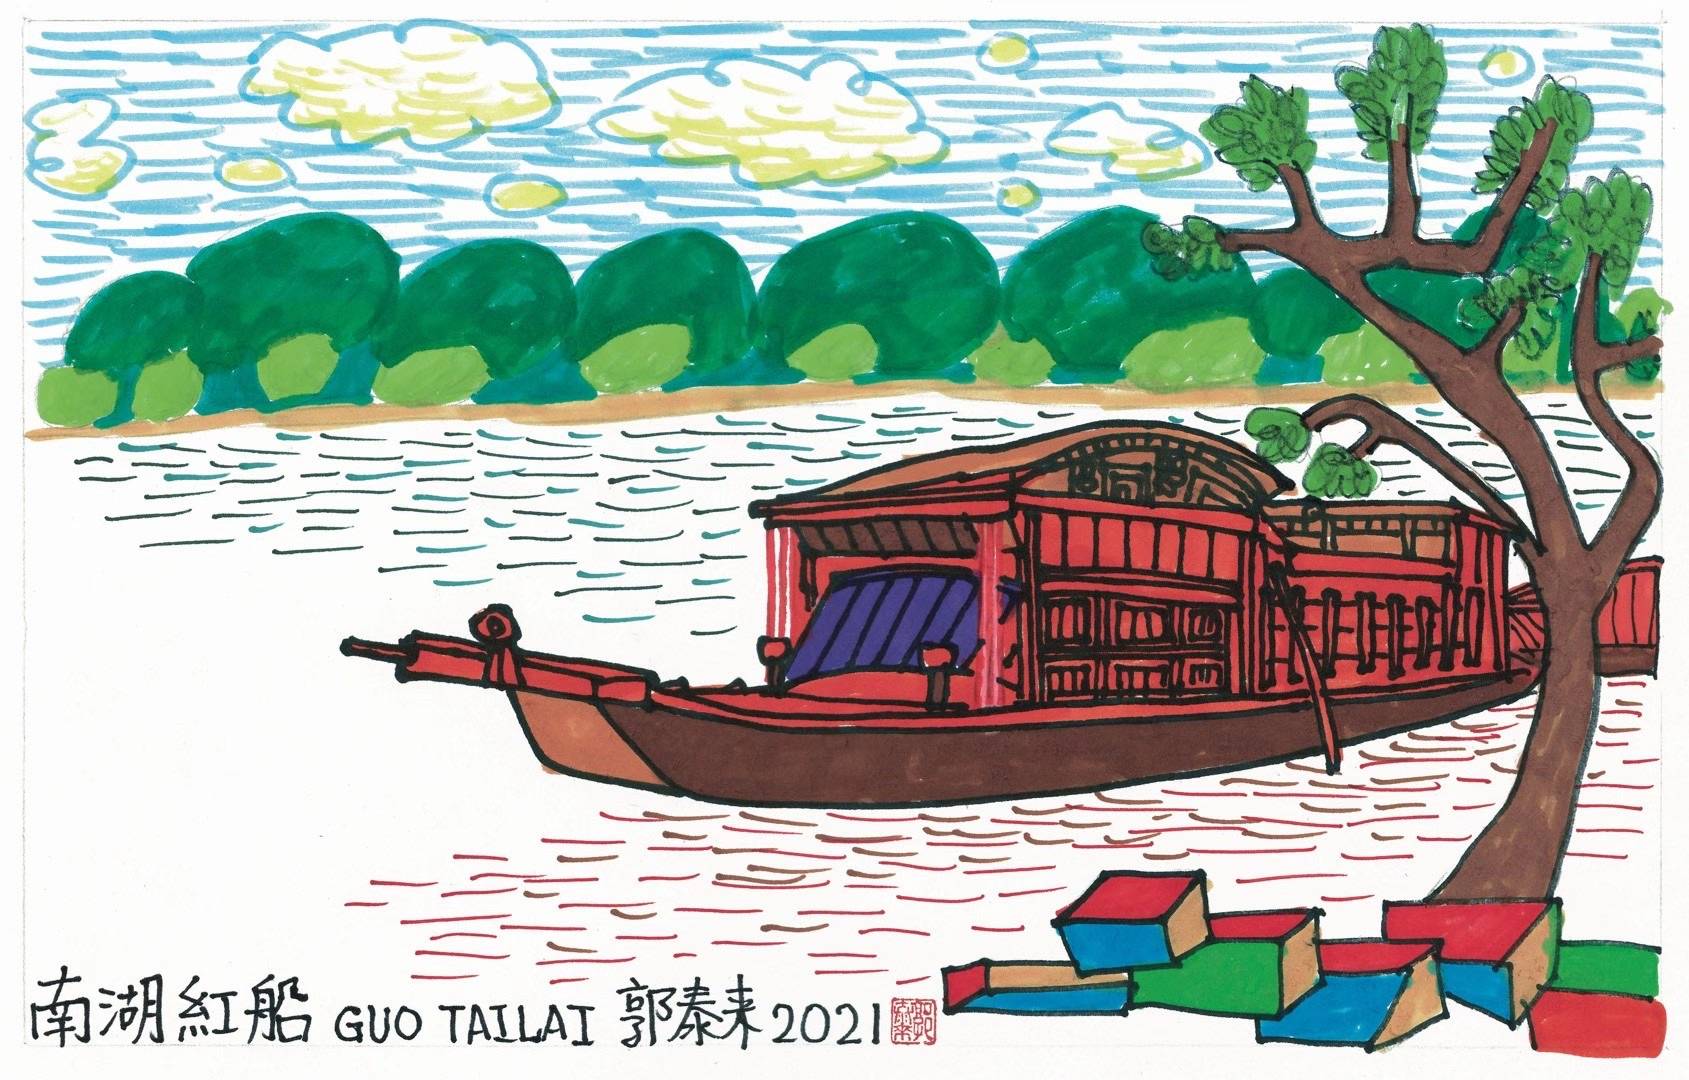 艳彩学派画家郭泰来先生画的南湖红船